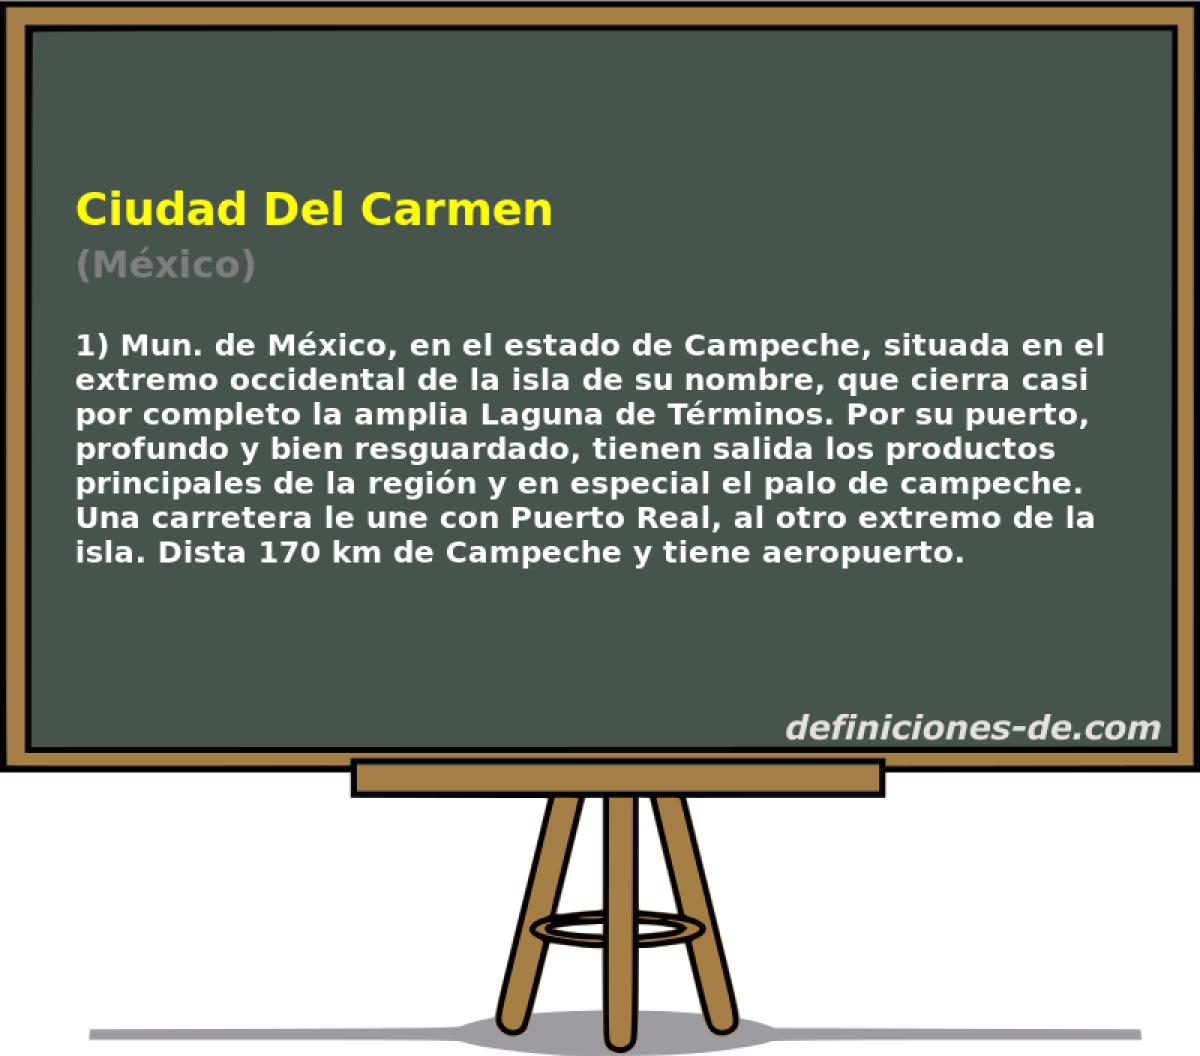 Ciudad Del Carmen (Mxico)